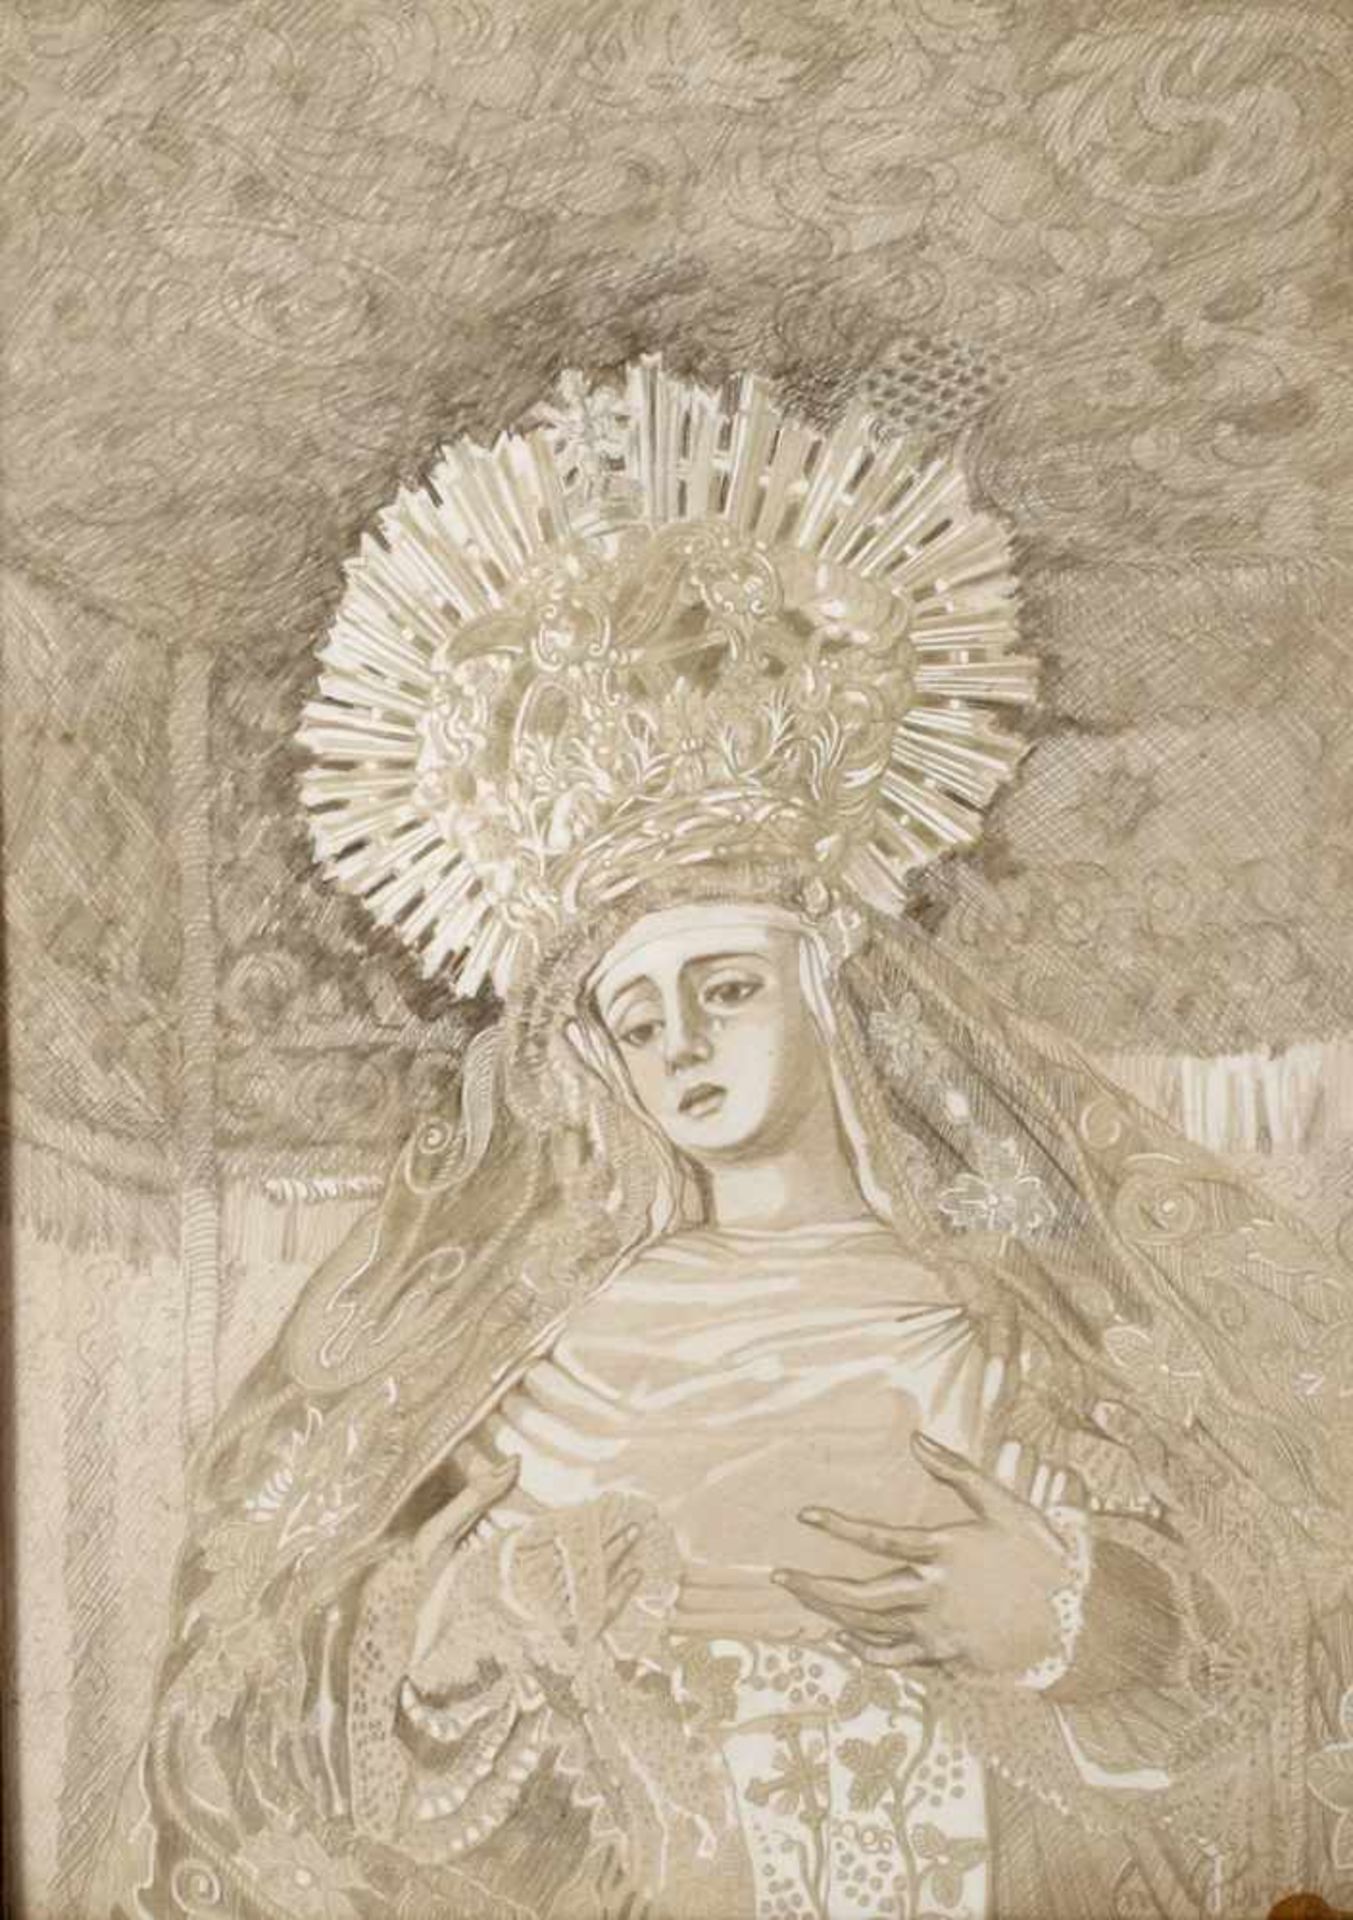 Erich Brude, Madonnenbildnisdie Mutter Gottes mit Strahlenkranz und Krone, Silberstift, partiell